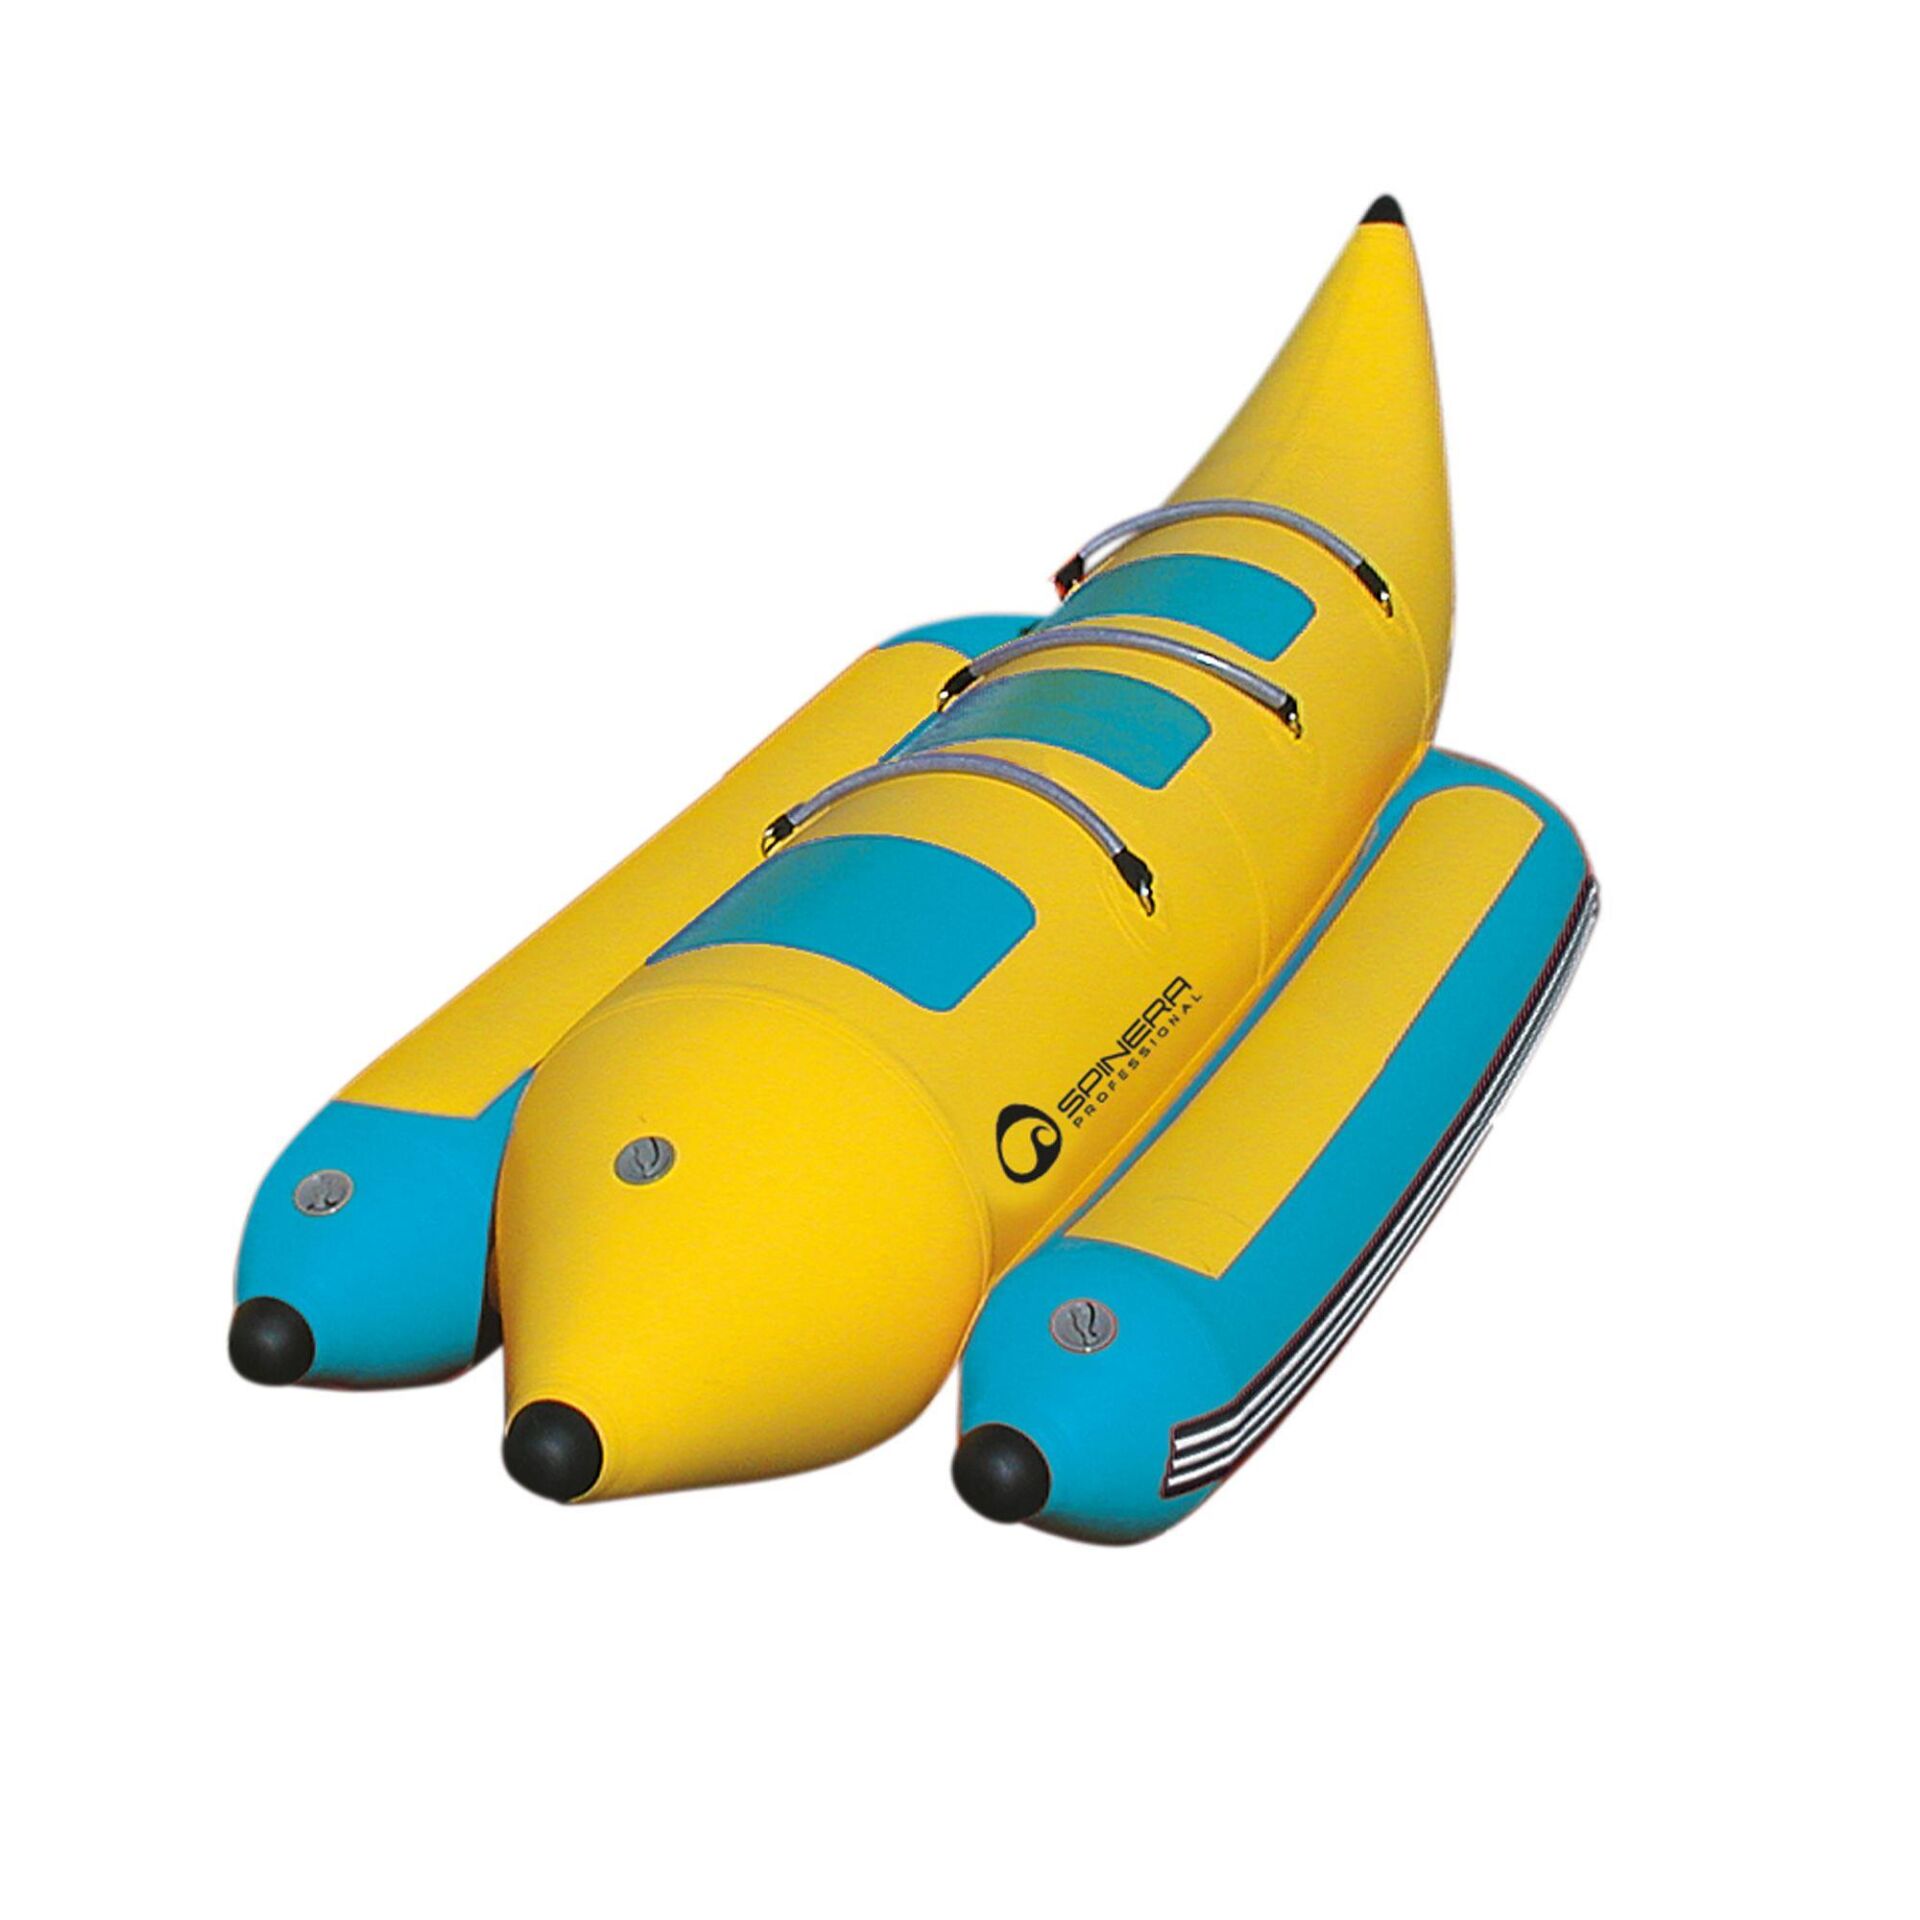 Spinera Professional E-Sea Multi Rider 3 Person Ringo Banana